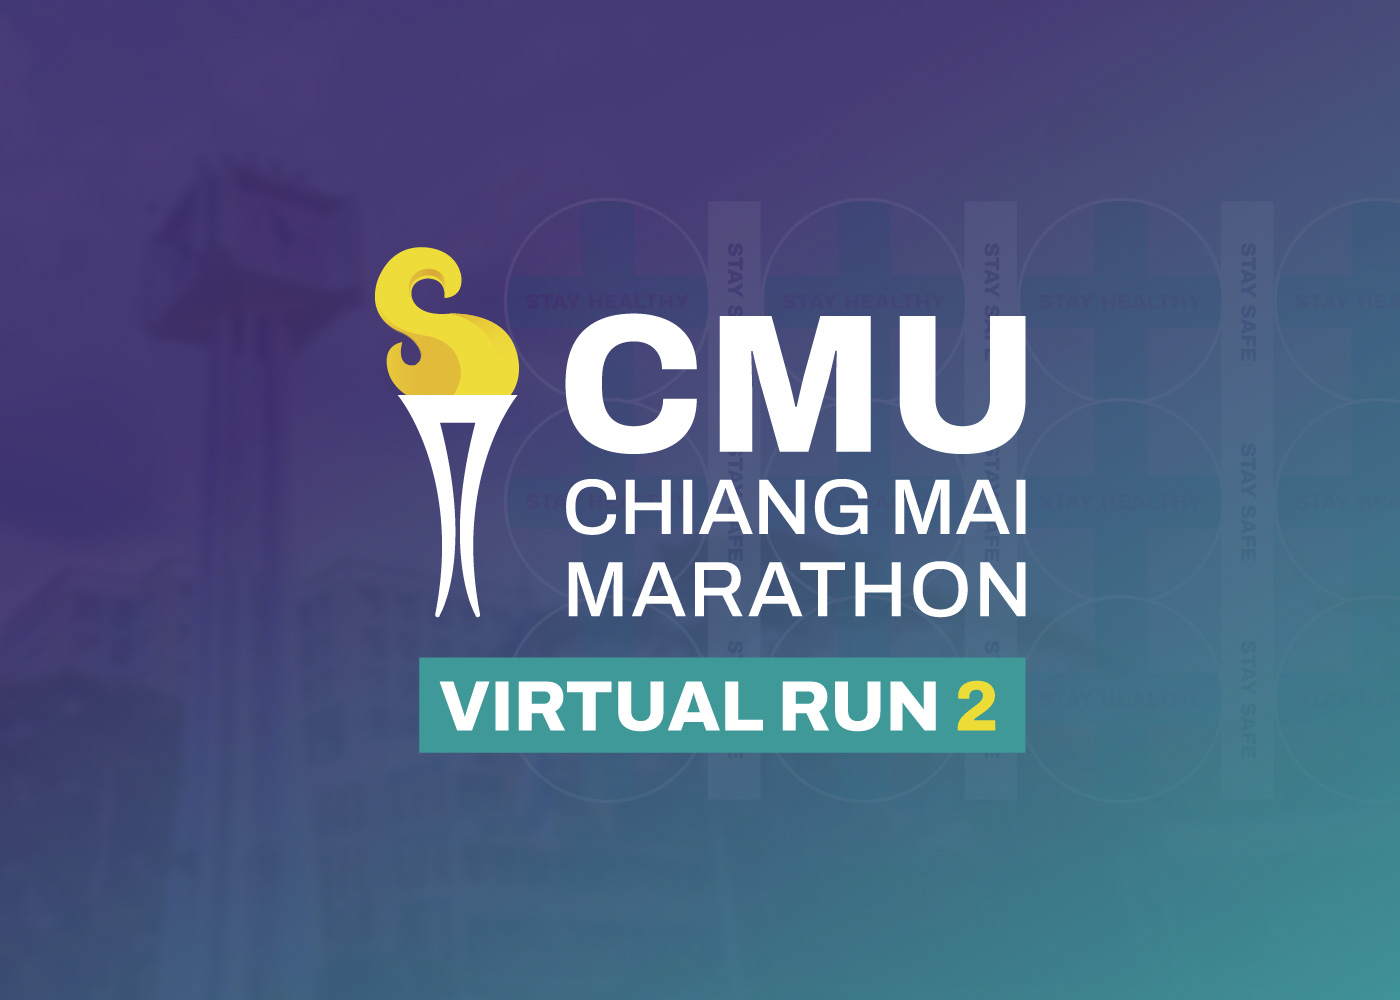 สมาคมนักศึกษาเก่ามหาวิทยาลัยเชียงใหม่ ร่วมกับ มหาวิทยาลัยเชียงใหม่ จัดกิจกรรม “วิ่งการกุศลมหาวิทยาลัยเชียงใหม่ - เชียงใหม่มาราธอน (CMU – Chiang Mai Marathon Virtual Run ครั้งที่ 2)”